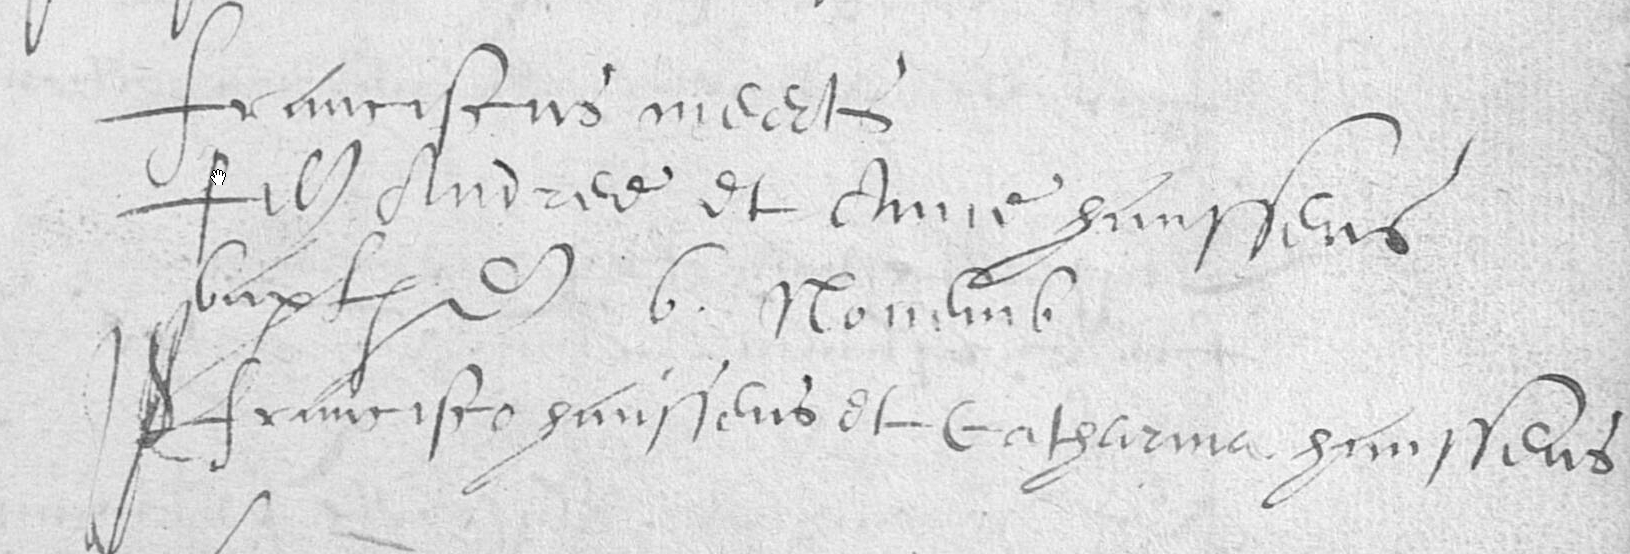 1618-FranciscusMeerts6Nov1618.jpg